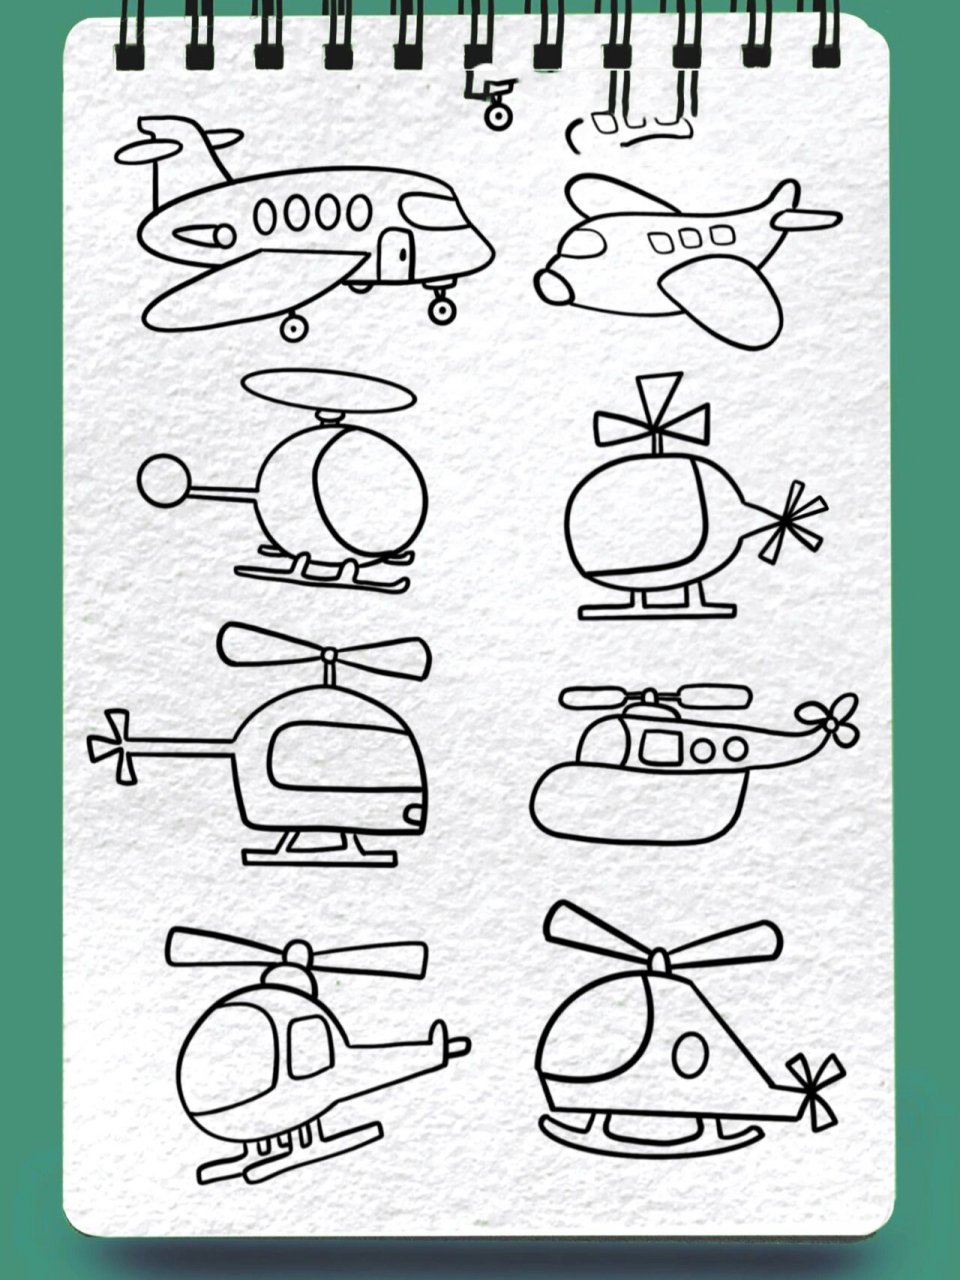 各种各样的直升飞机简笔画交通工具简单画法      98住  慢慢练习